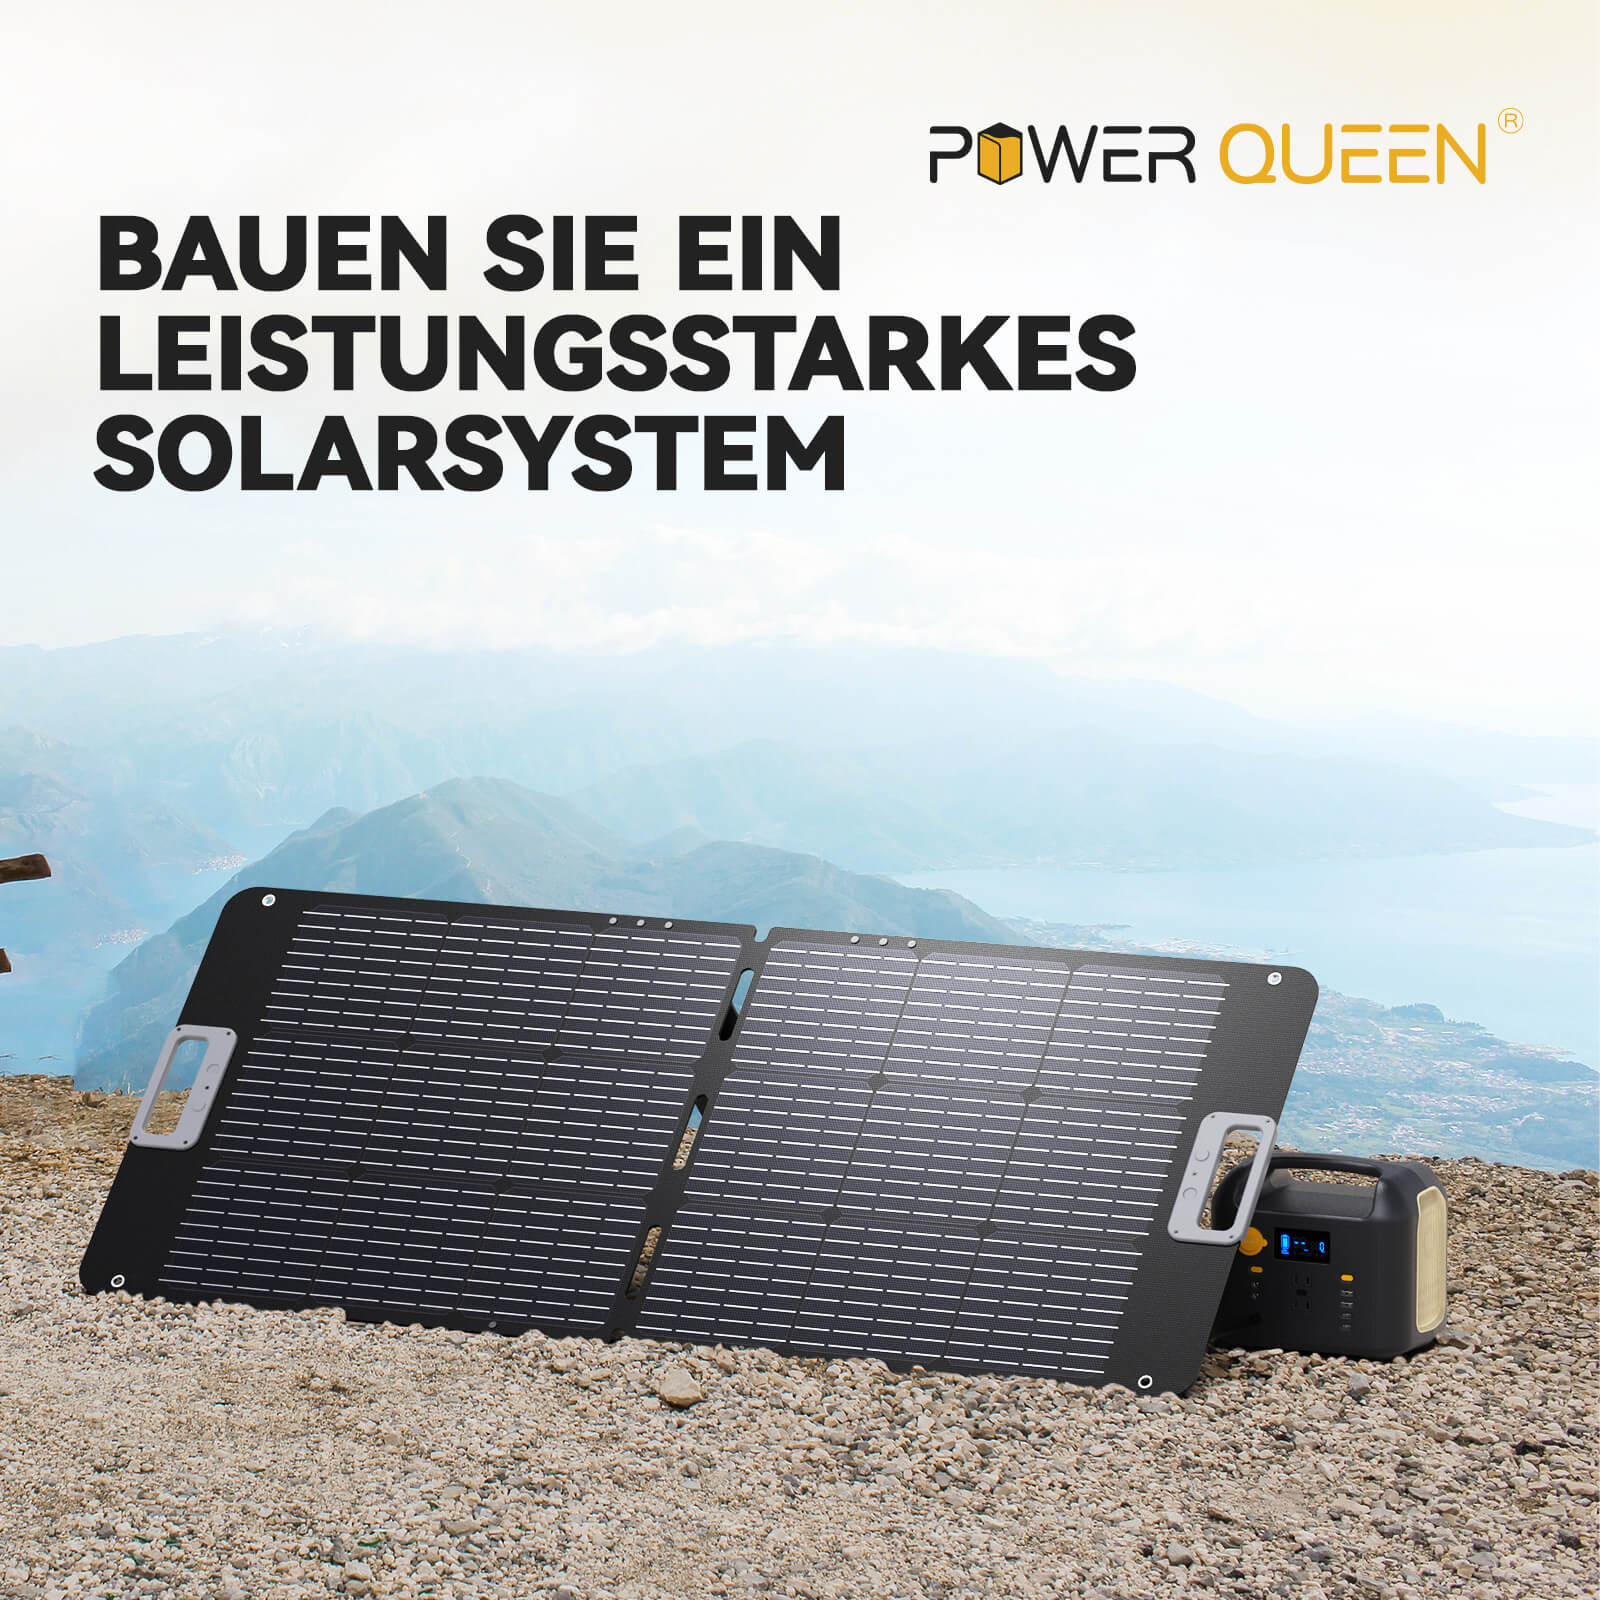 Power Queen 100W tragbares Solarpanel für Gärten, Balkone, Wohnmobil, Camping